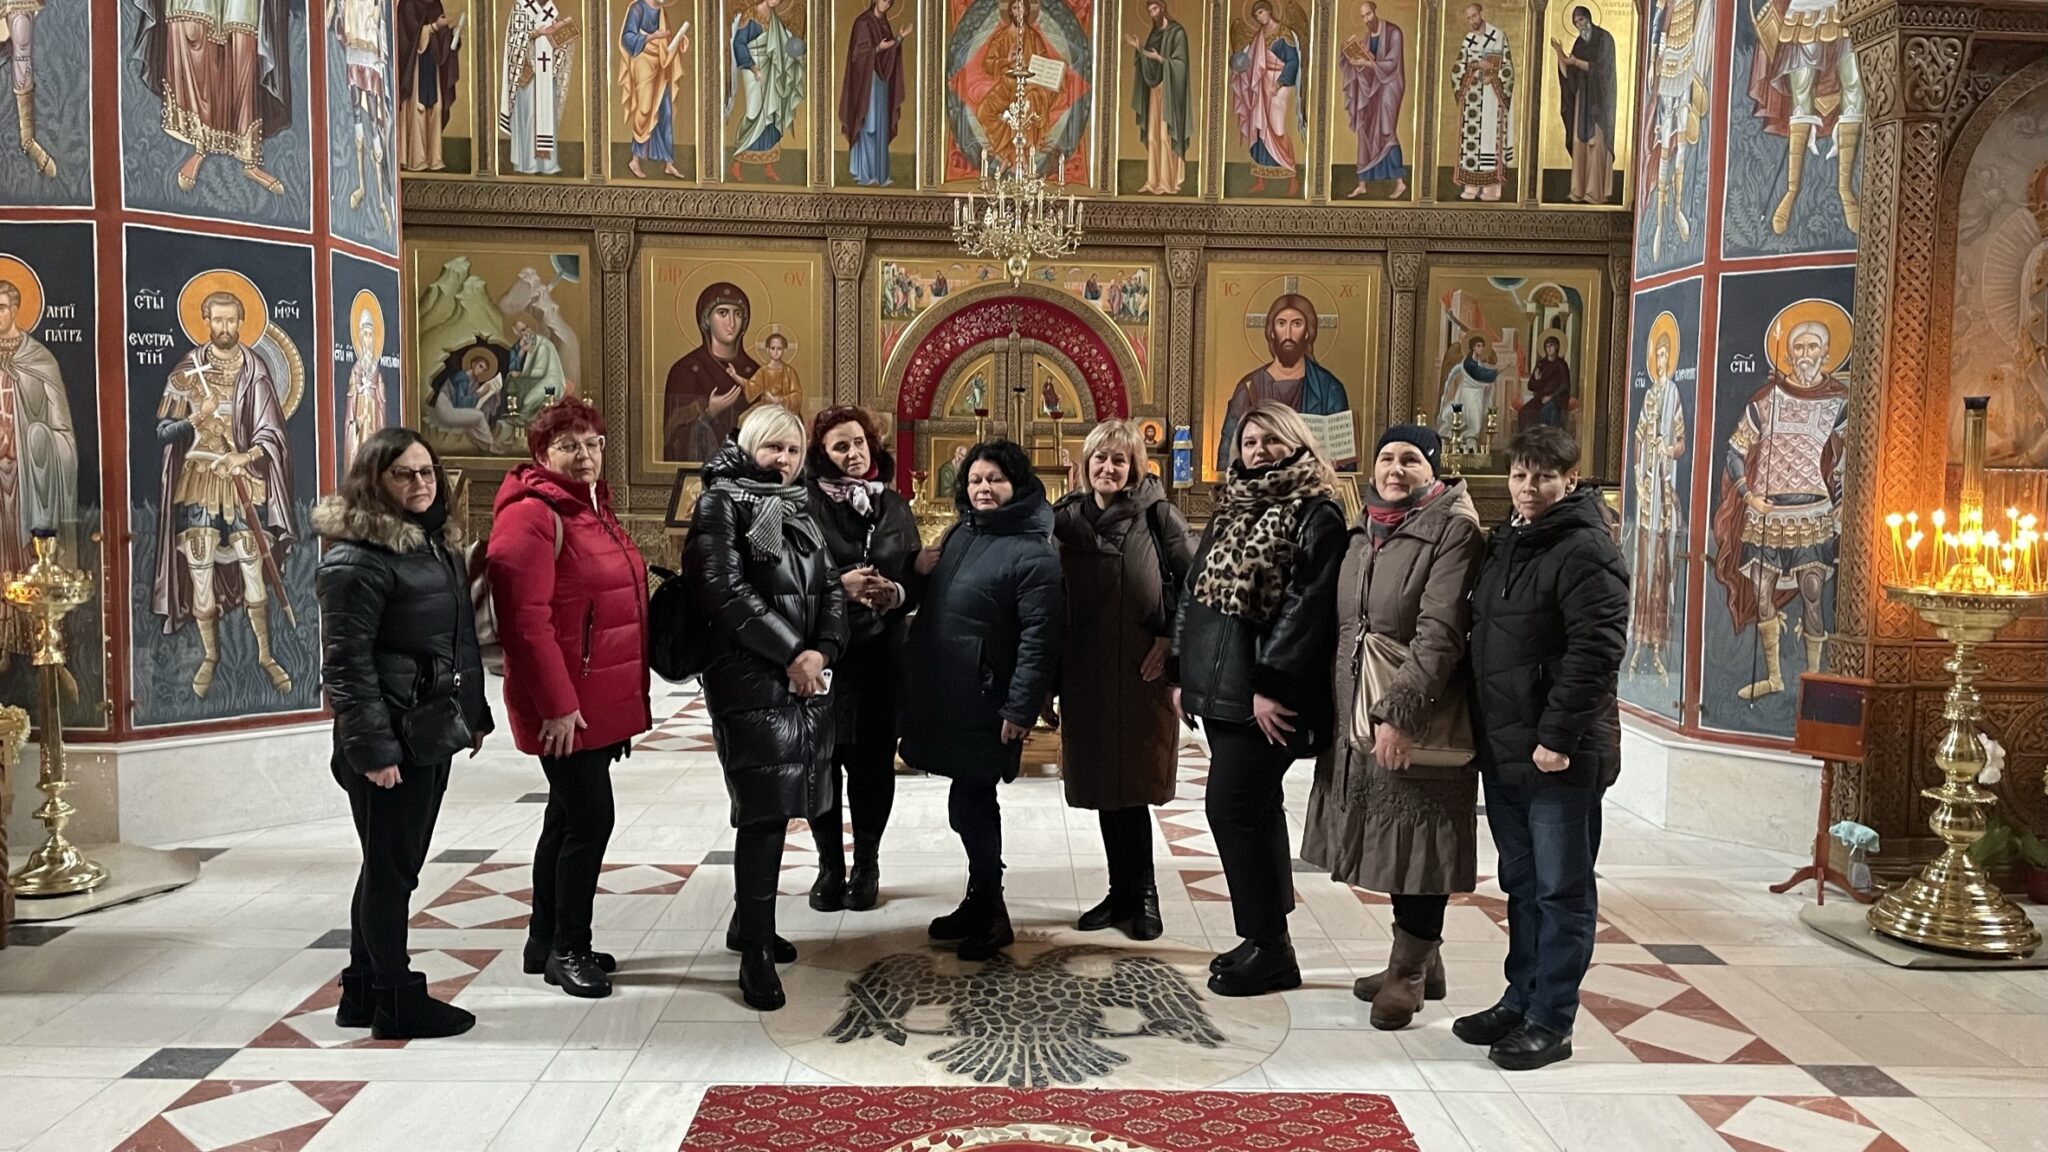 Podczas podróży nauczyciele zwiedzili Białystok, prawosławny Monaster Zwiastowania Przenajświętszej Bogarodzicy i Muzeum Ikon.